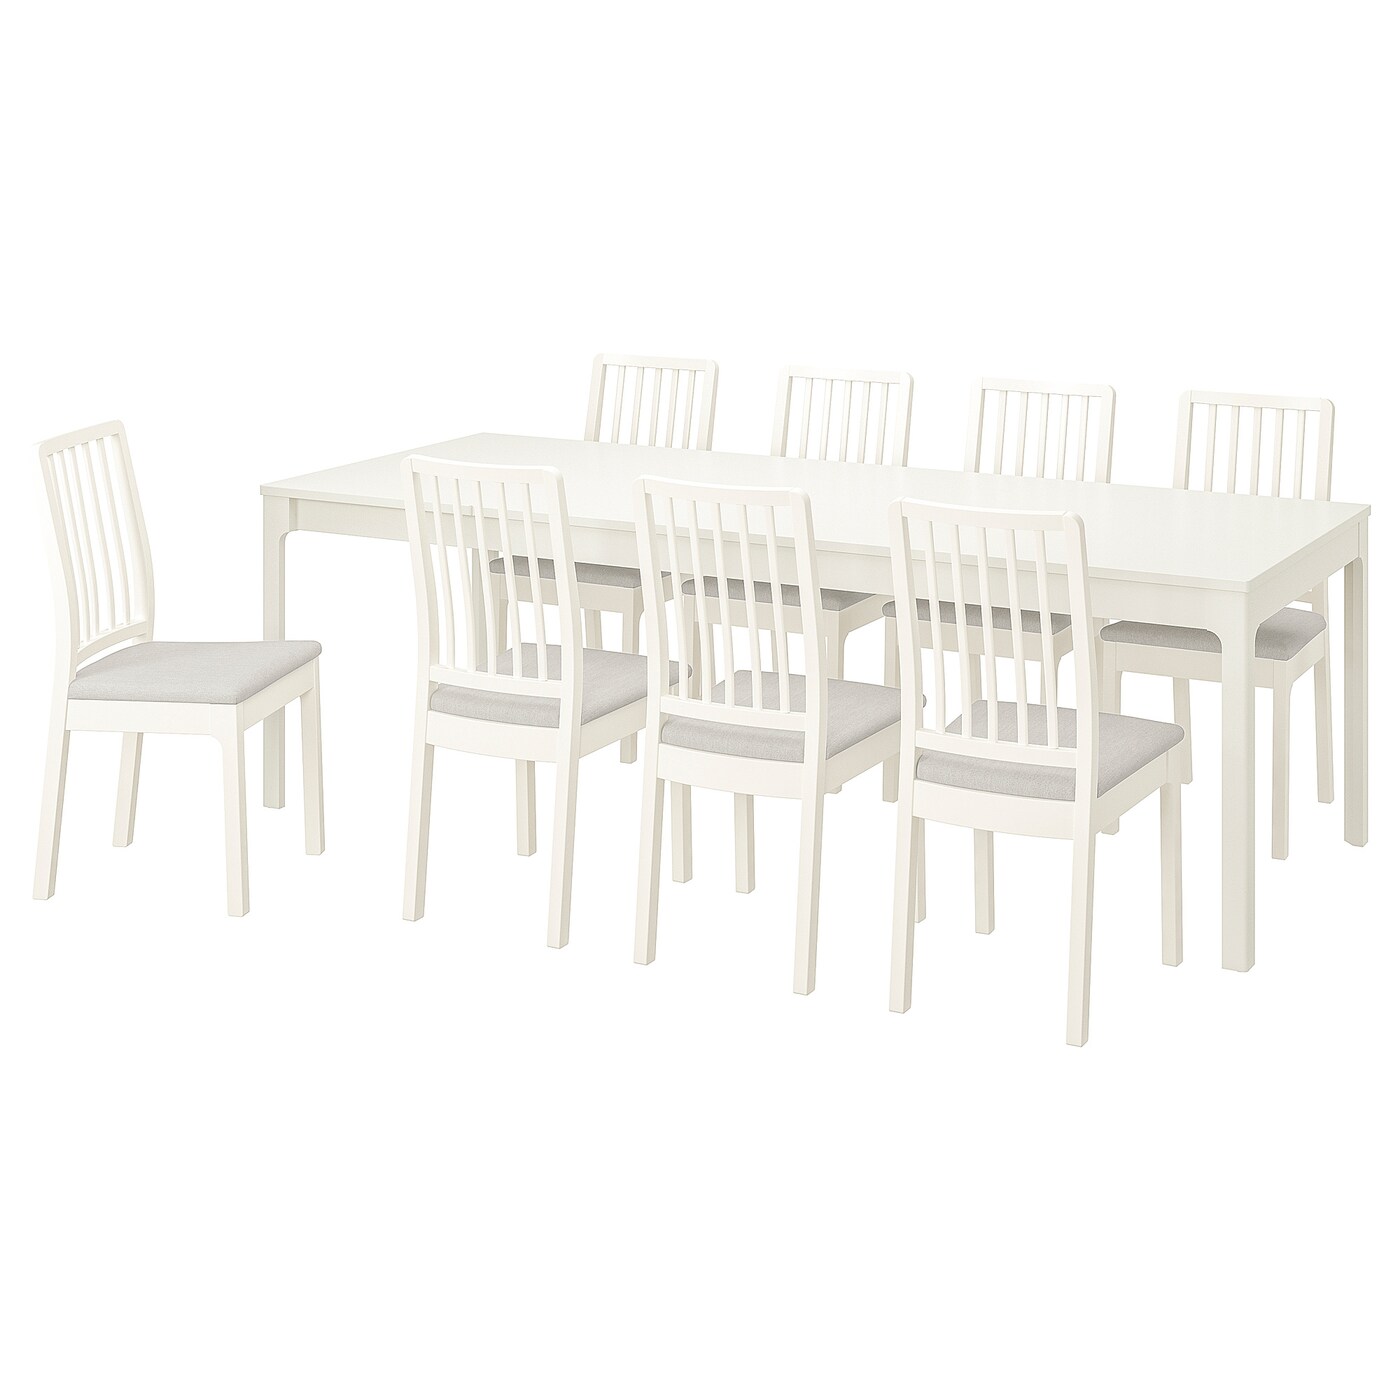 Стол и 8 стульев - IKEA EKEDALEN/ЭКЕДАЛЕН ИКЕА, 180х240x90 см, белый/серый